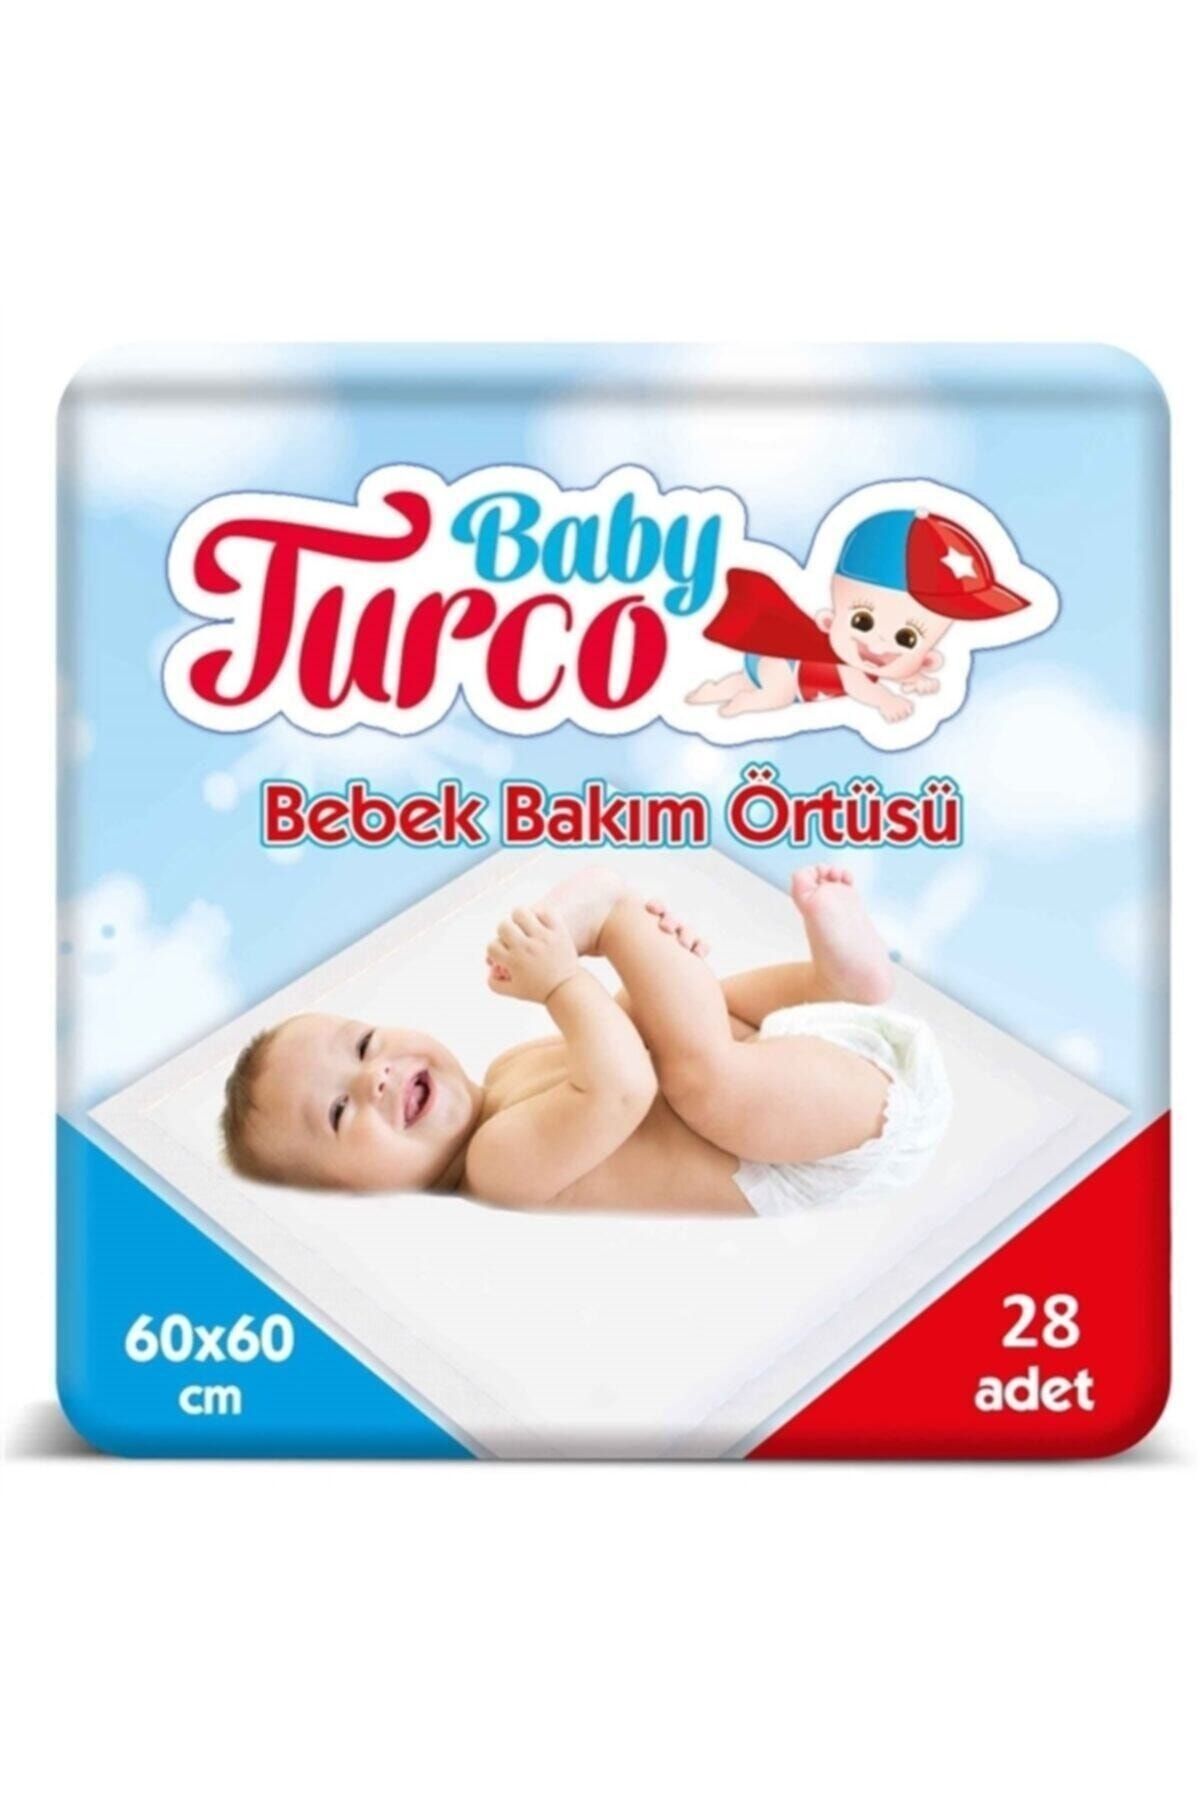 Baby Turco Bebek Bakım Örtüsü 60x60 Cm 28 Adet Bebek Bakım Örtüsü 60x60 Cm 28 Adet